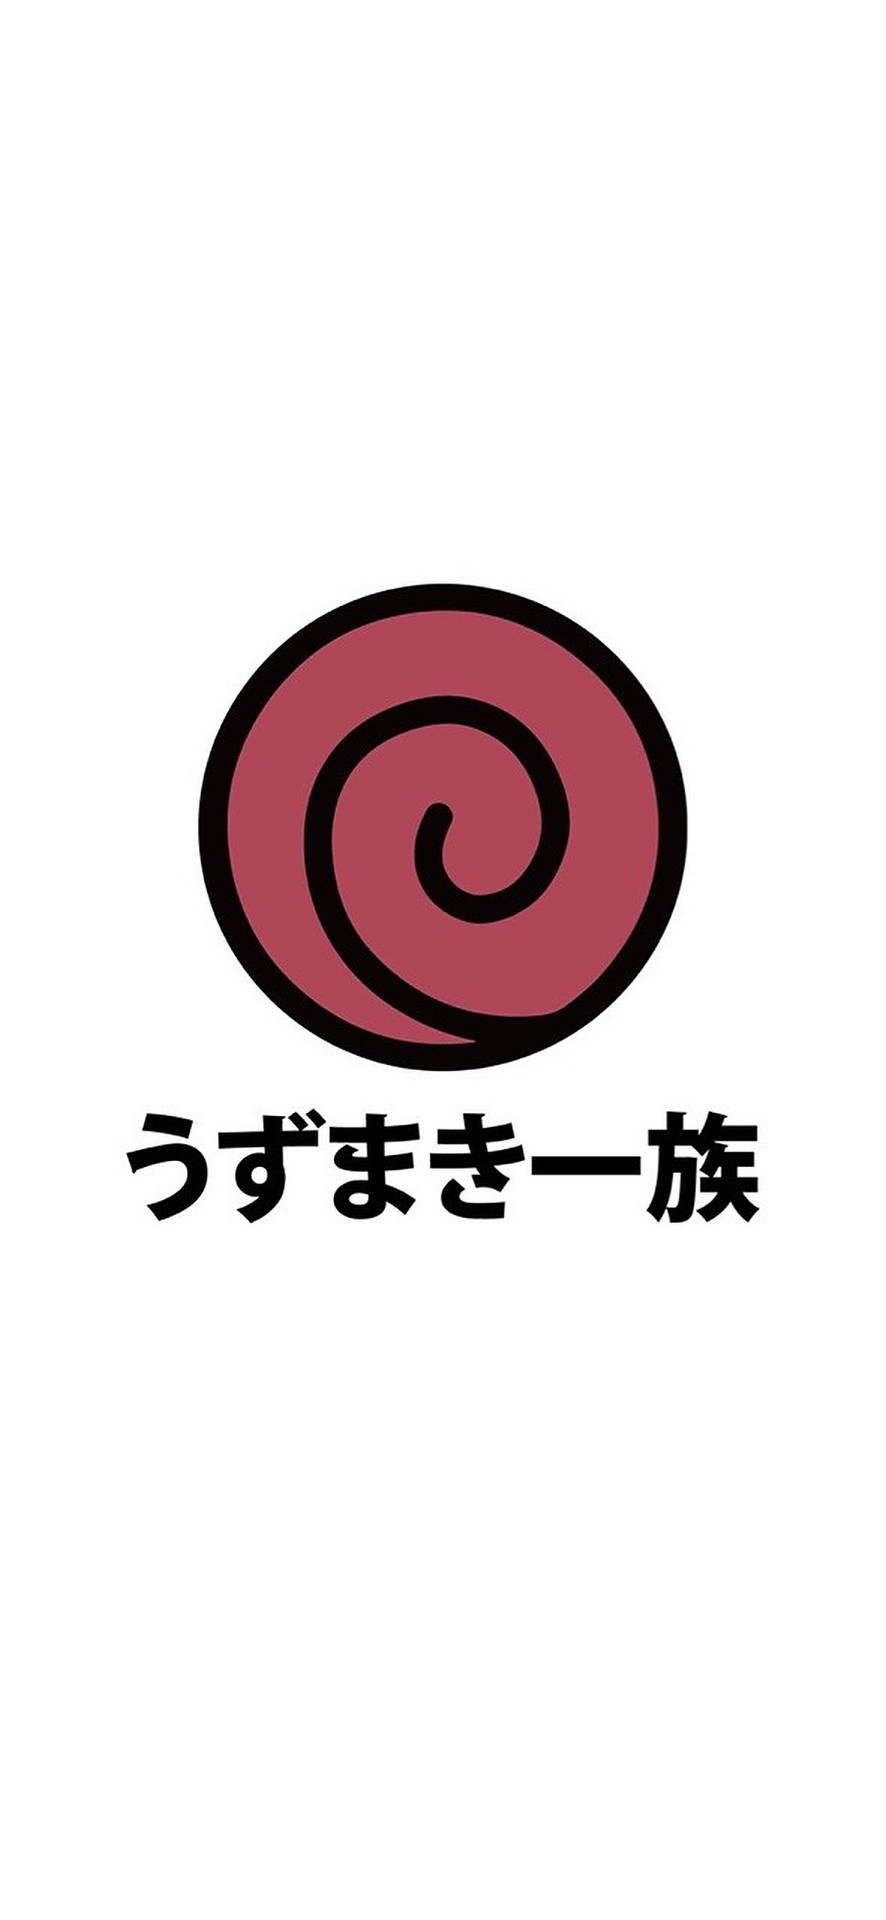 Red Uzumaki Clan Logo Wallpaper